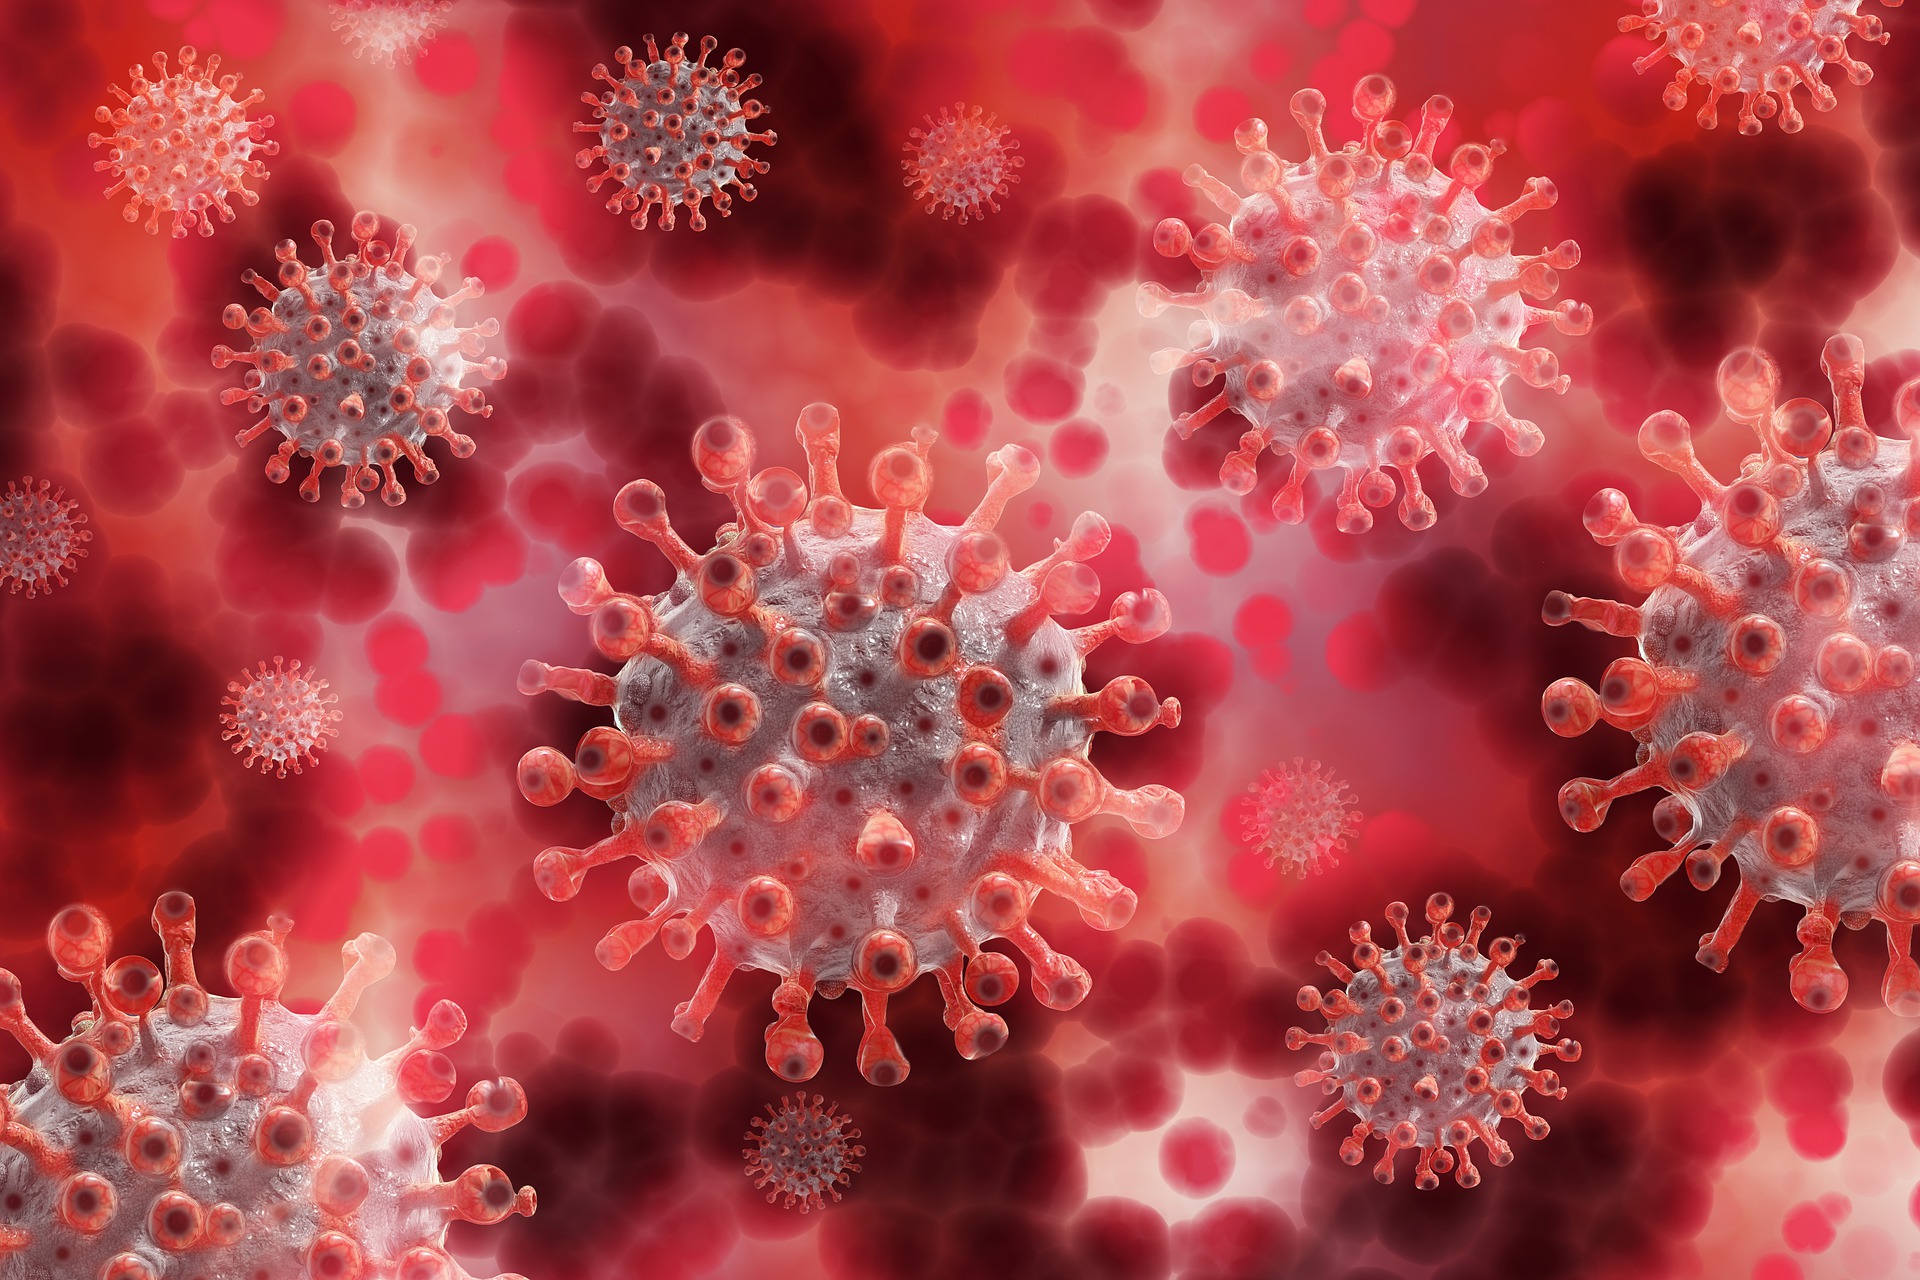 질병을 일으키는 원인 중의 하나인 바이러스들을 형상화한 사진